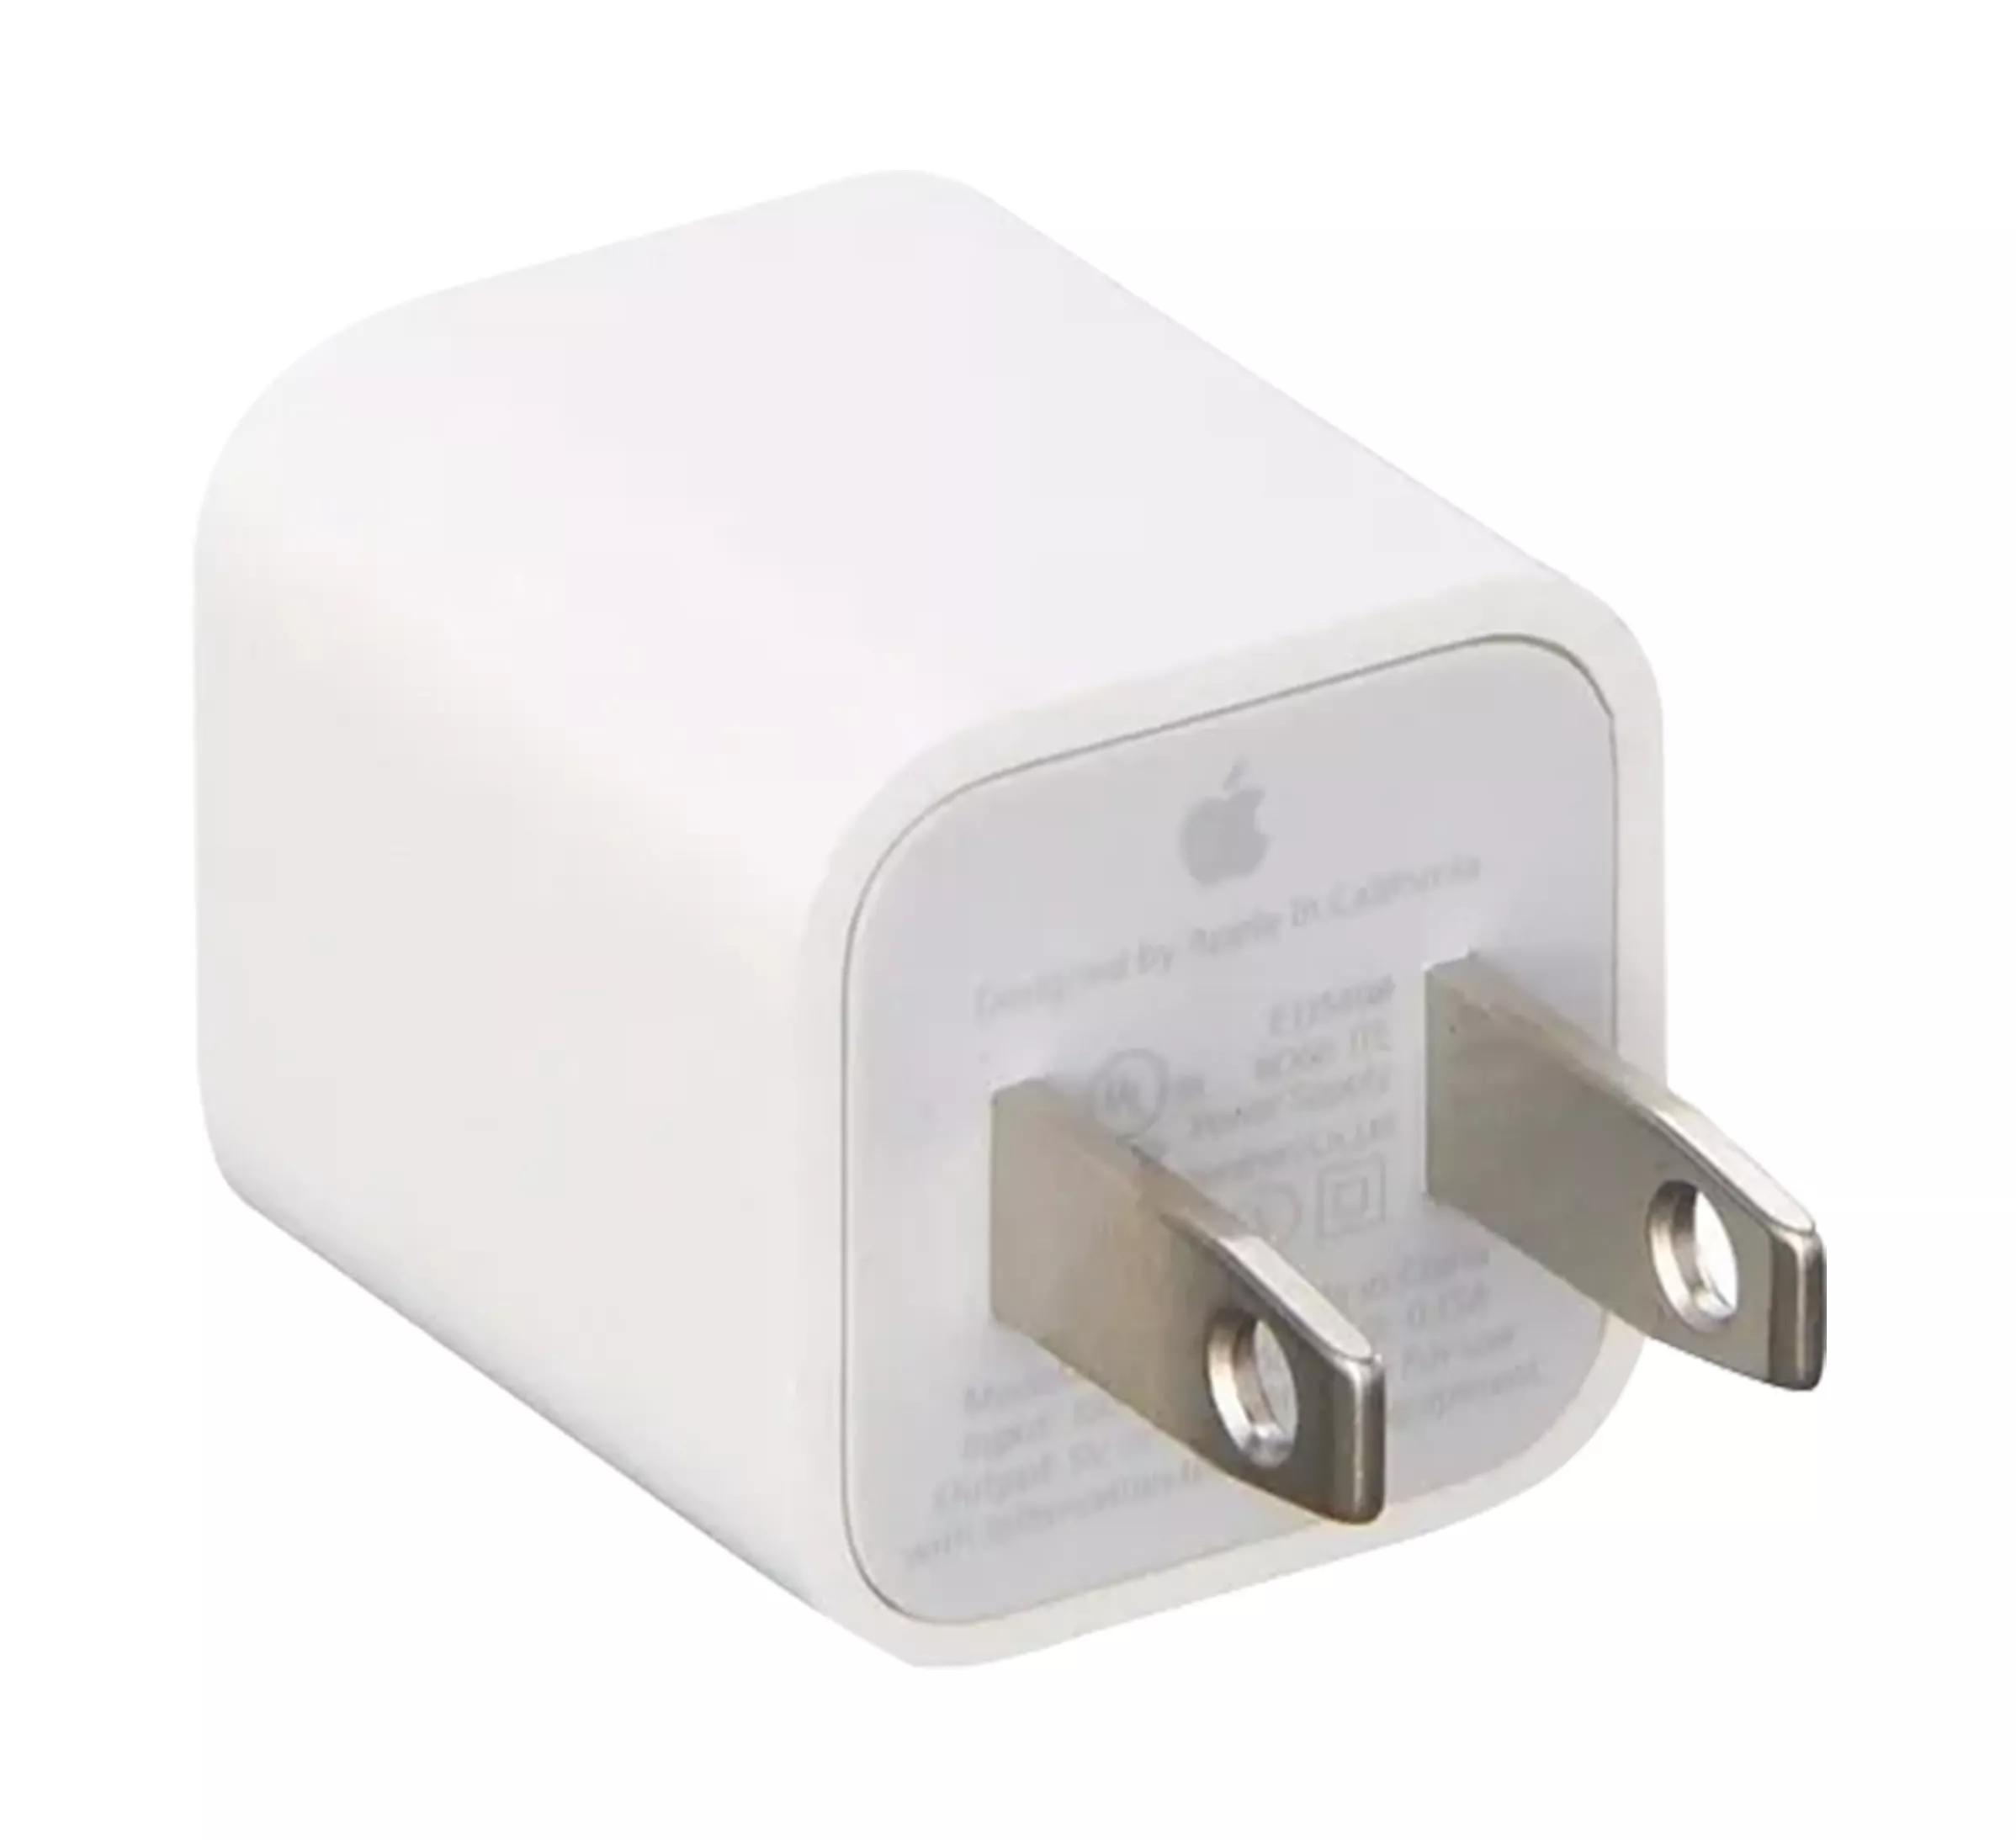 Apple adaptador de corriente usb